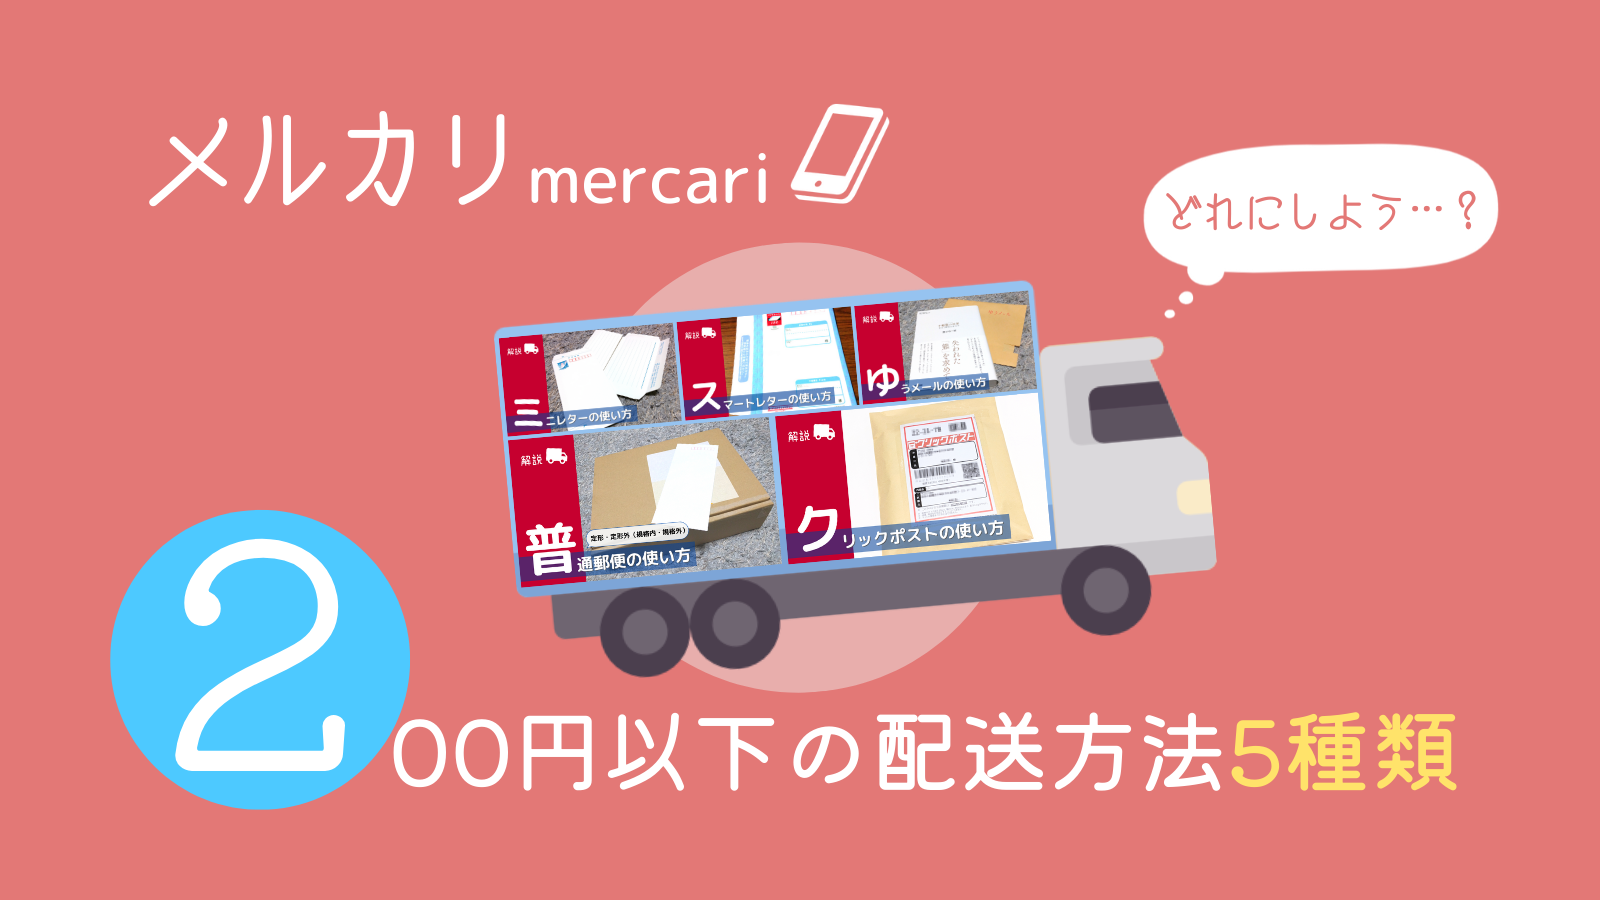 アイキャッチ画像・メルカリ商品を200円以下で送れる配送方法5種類を紹介